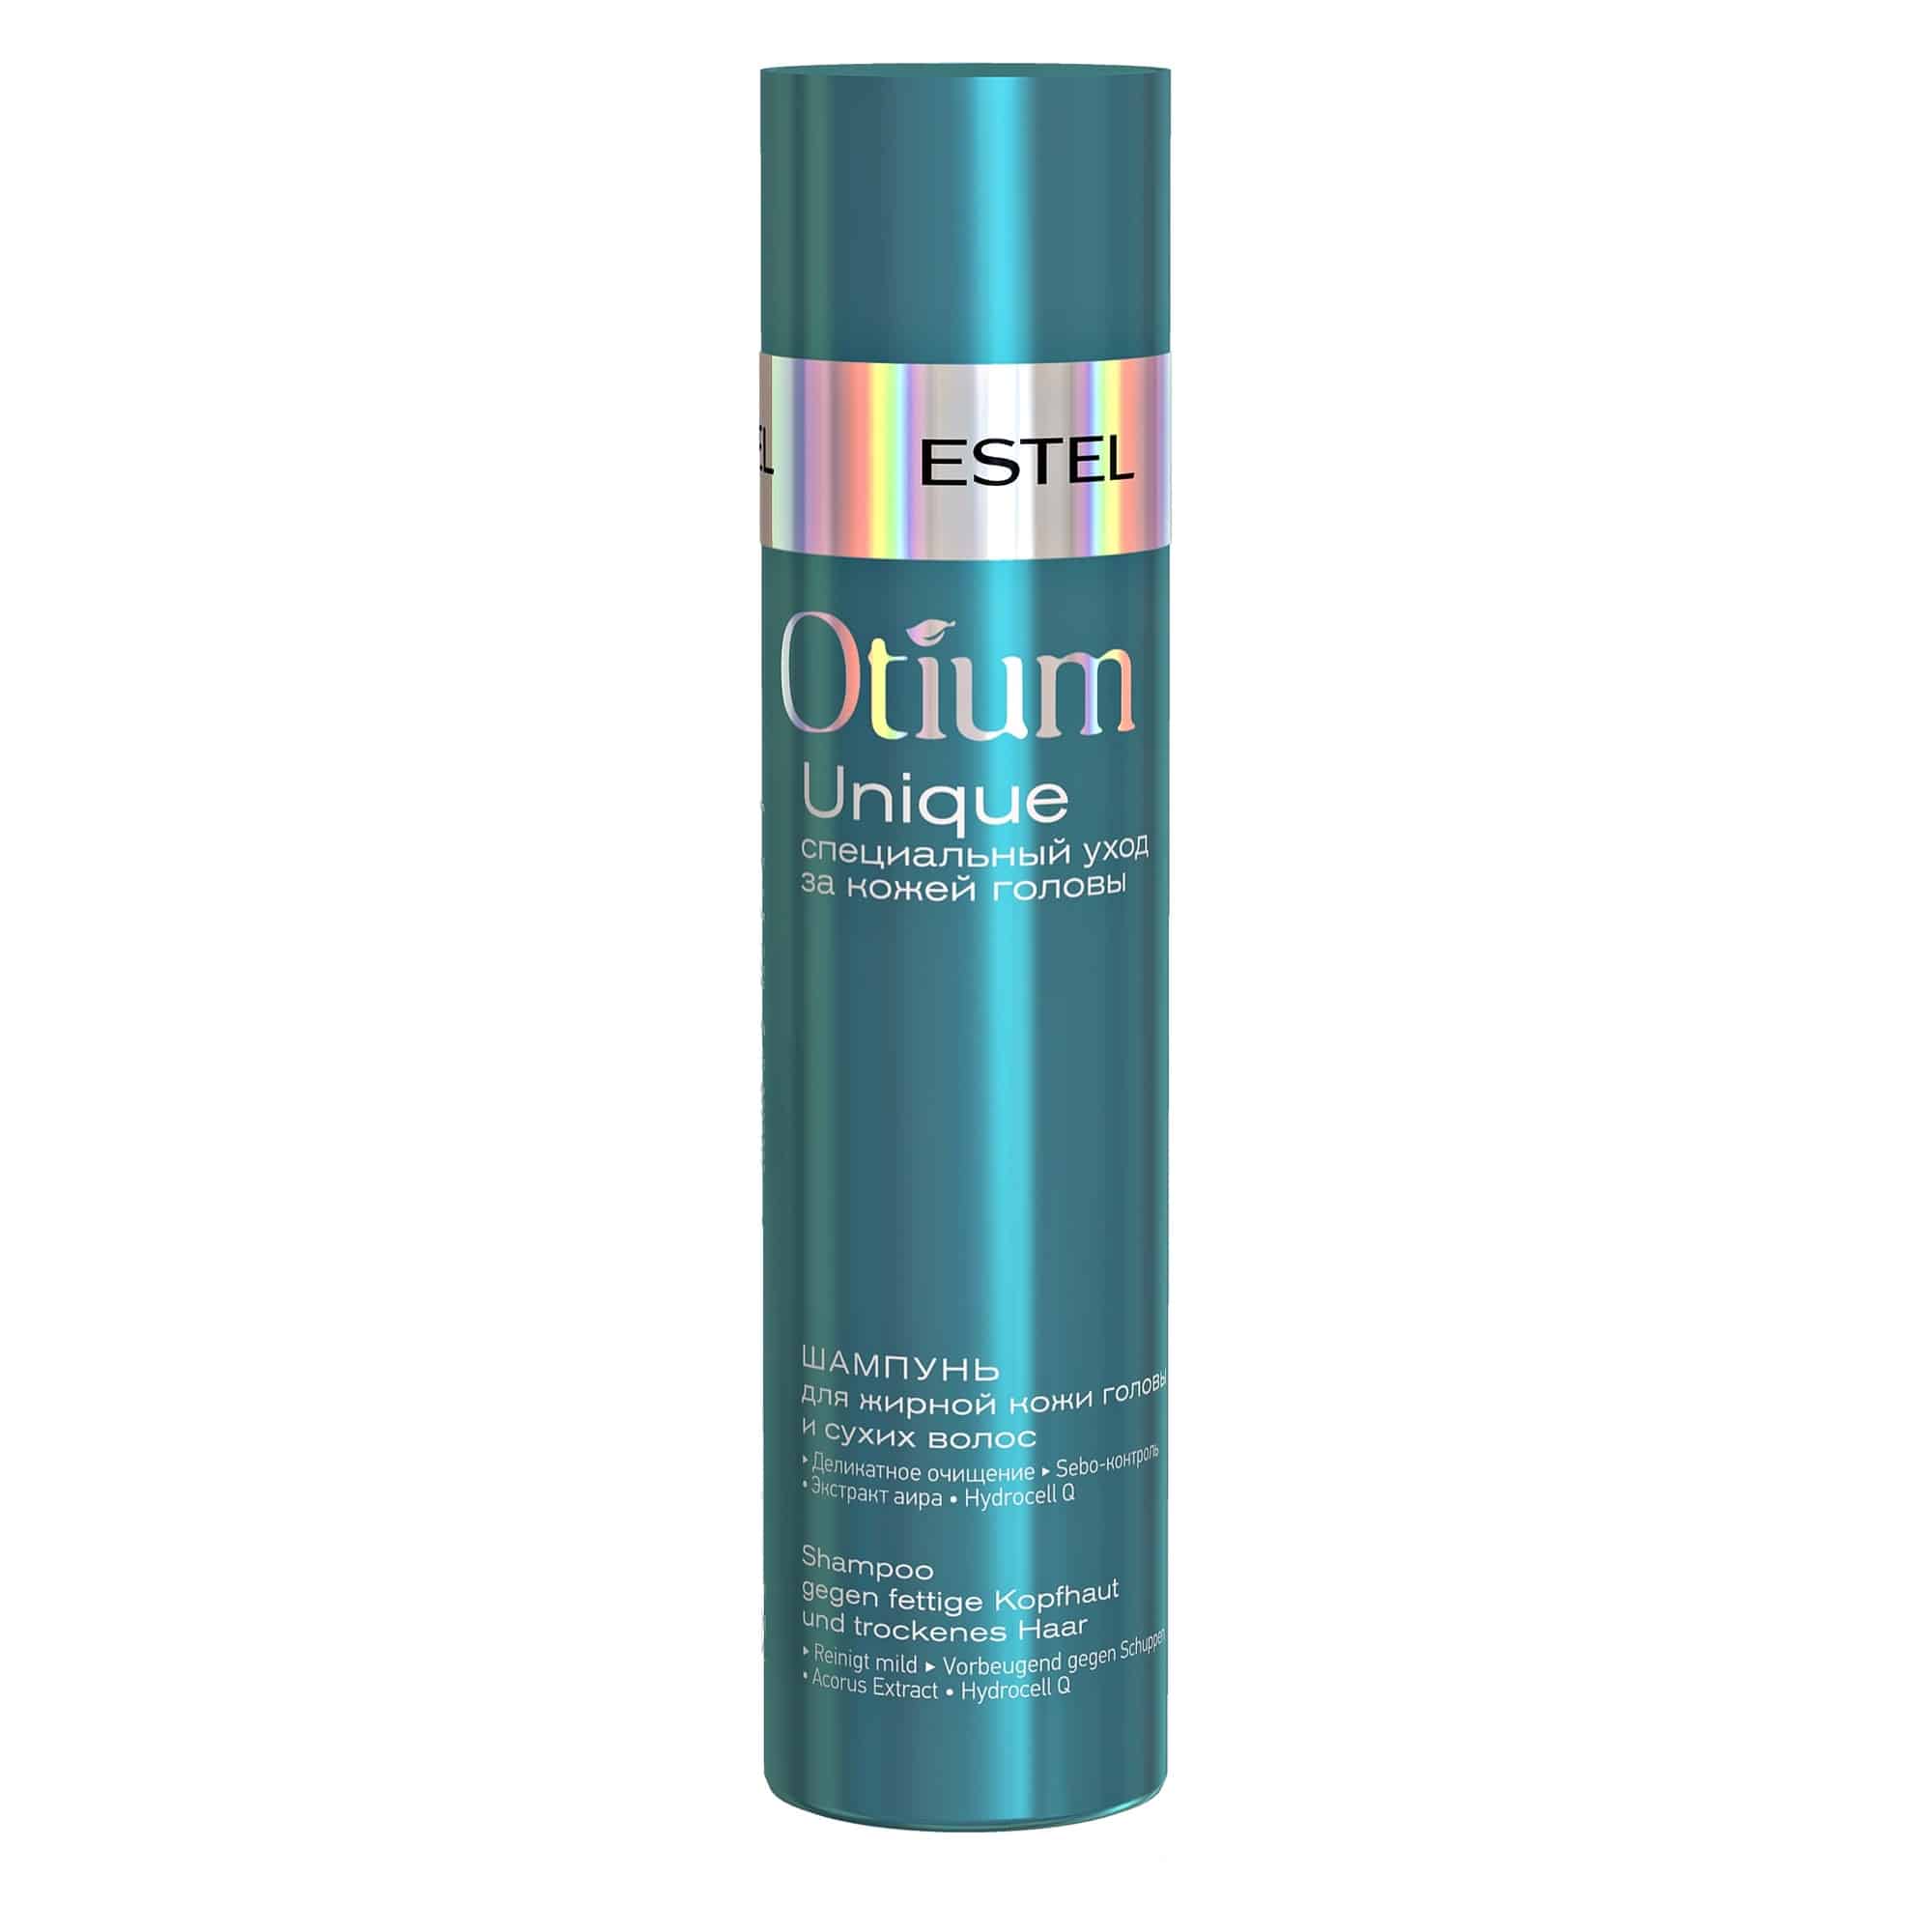 Otium Unique Shampoo gegen fettige Kopfhaut und trockenes Haar von ESTEL